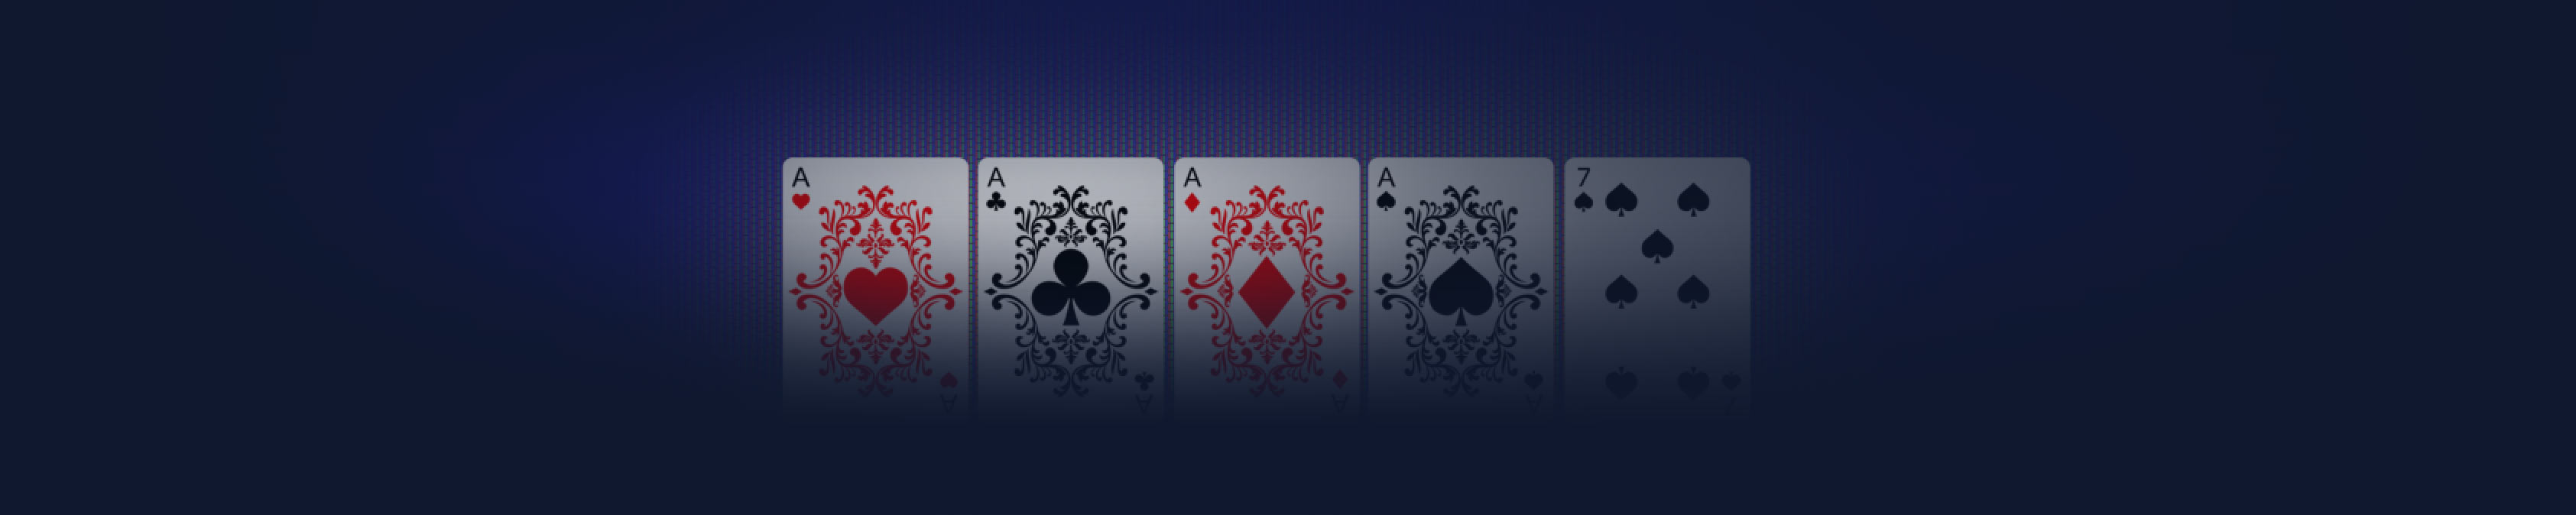 Video poker casinosearch.eu